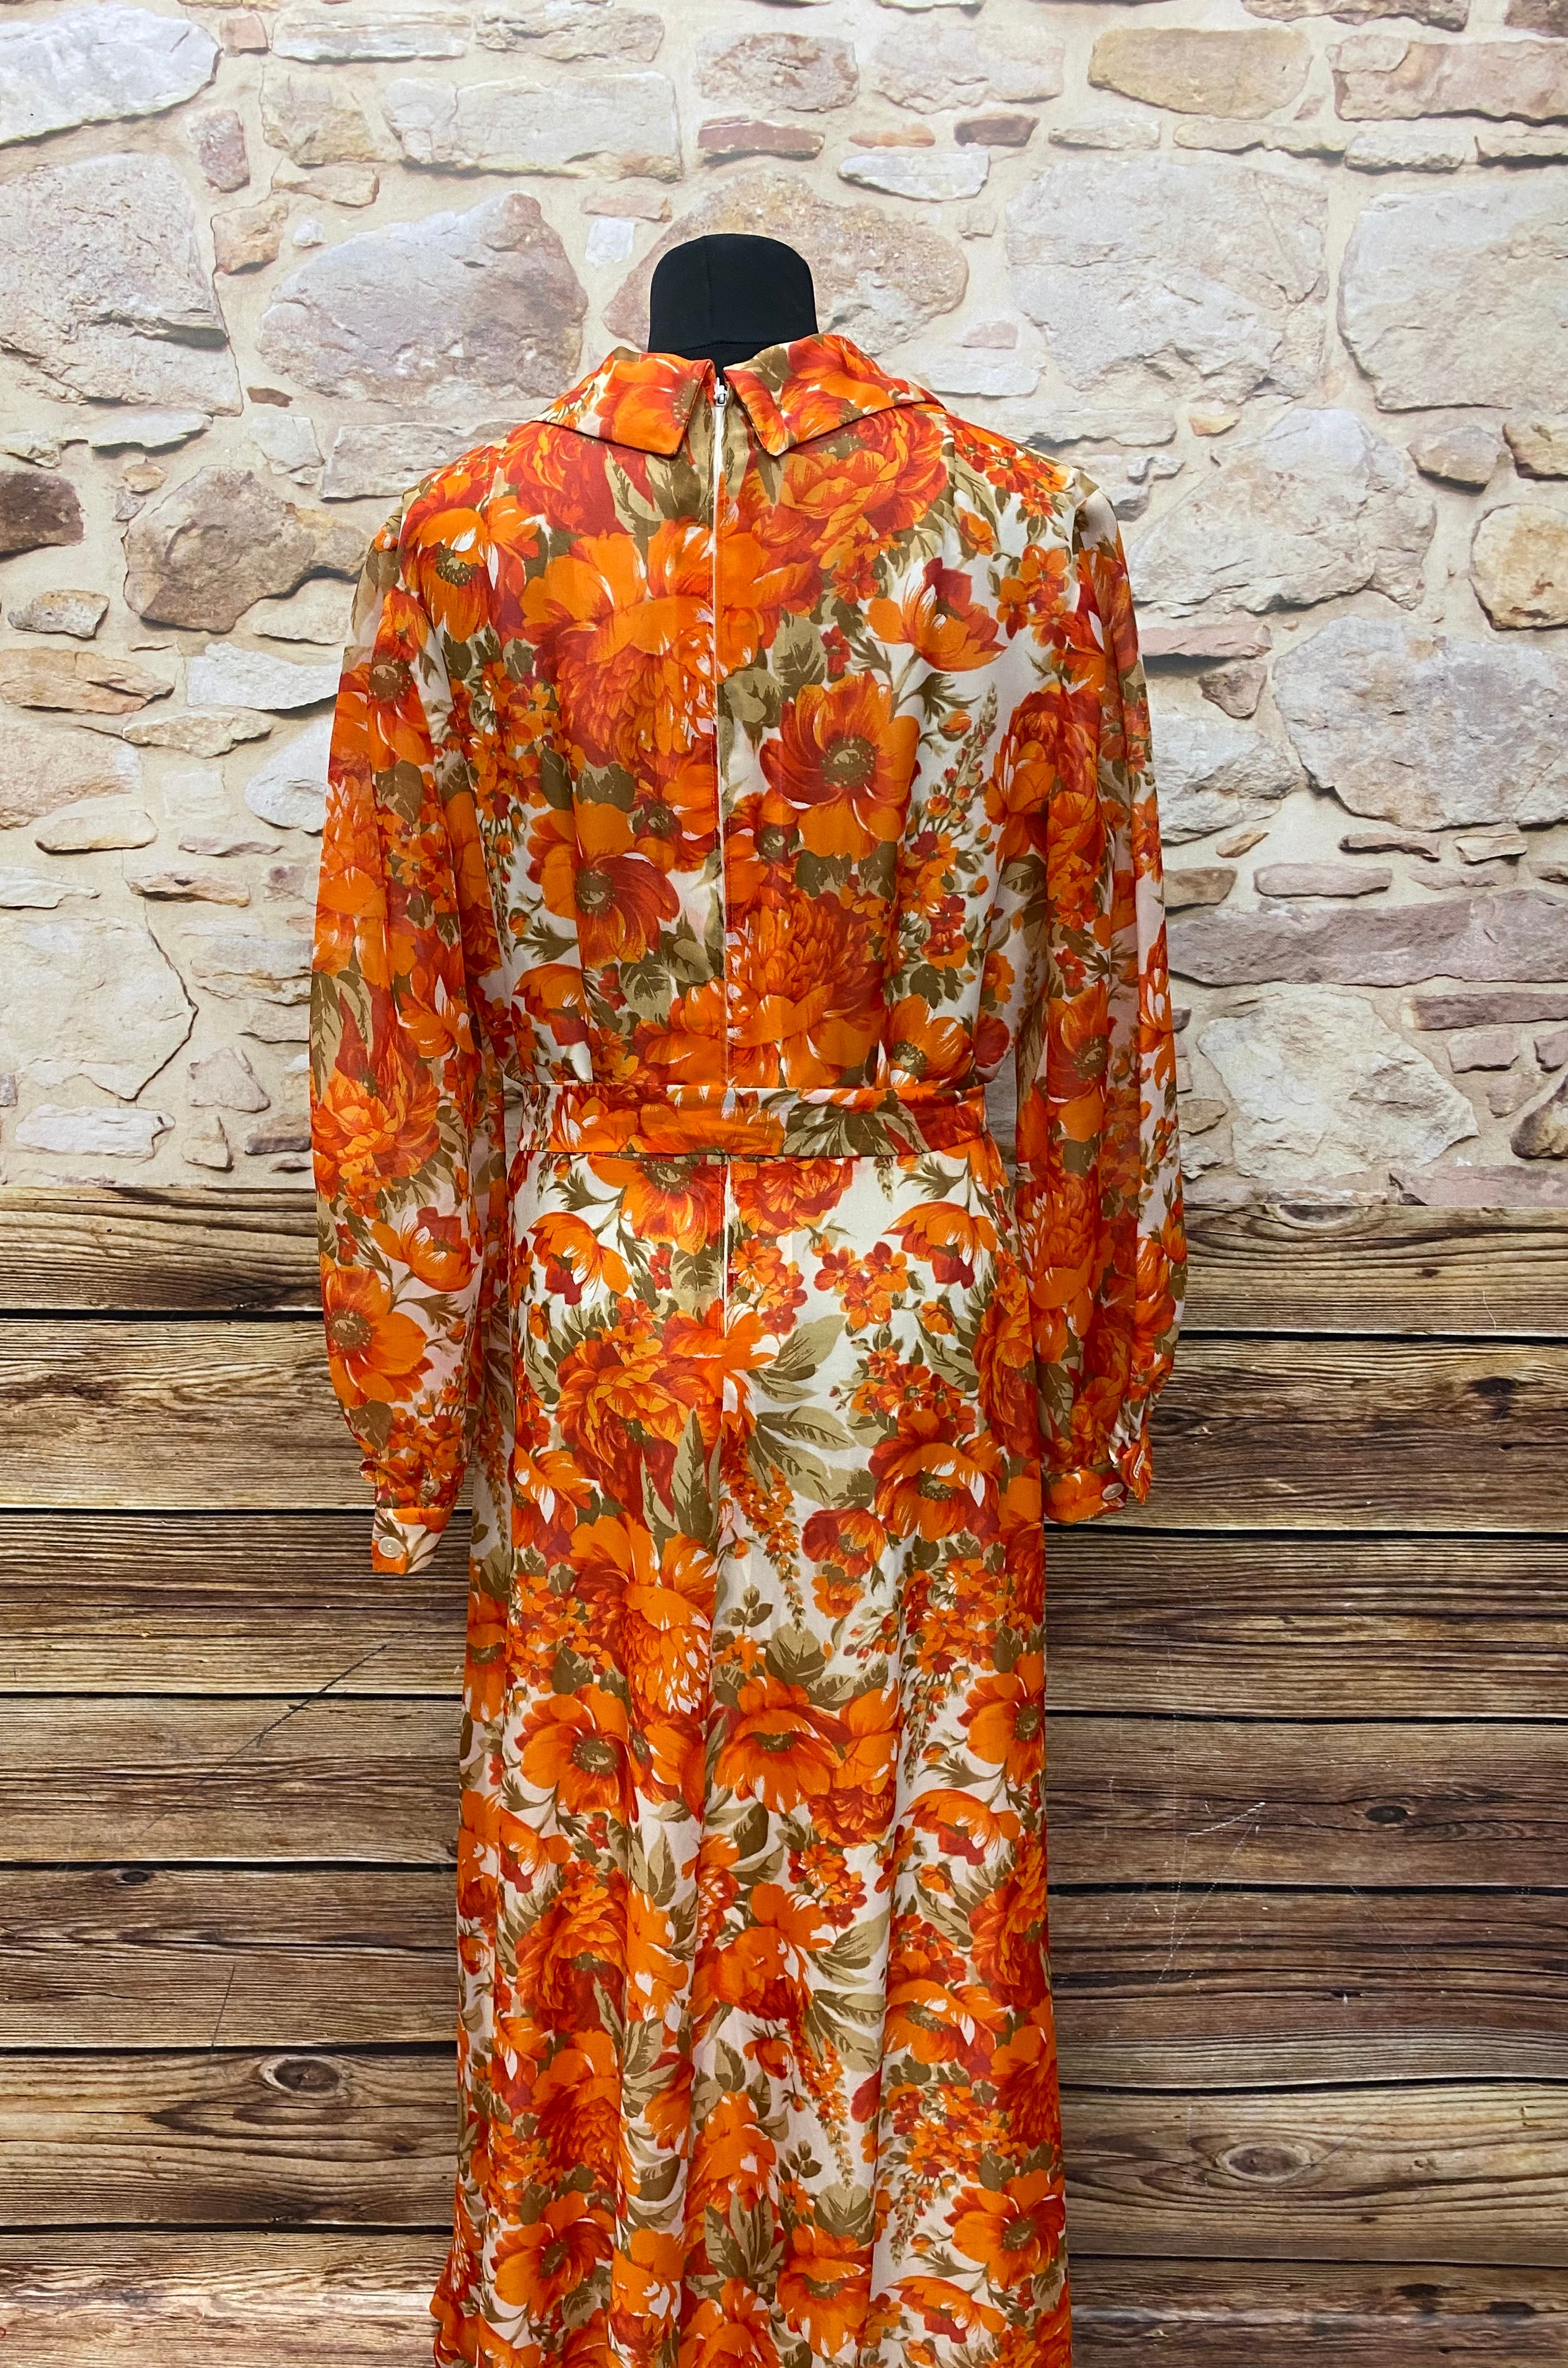 70er Jahre Maxi-Kleid True Vintage Original Gr.44 Damen orange